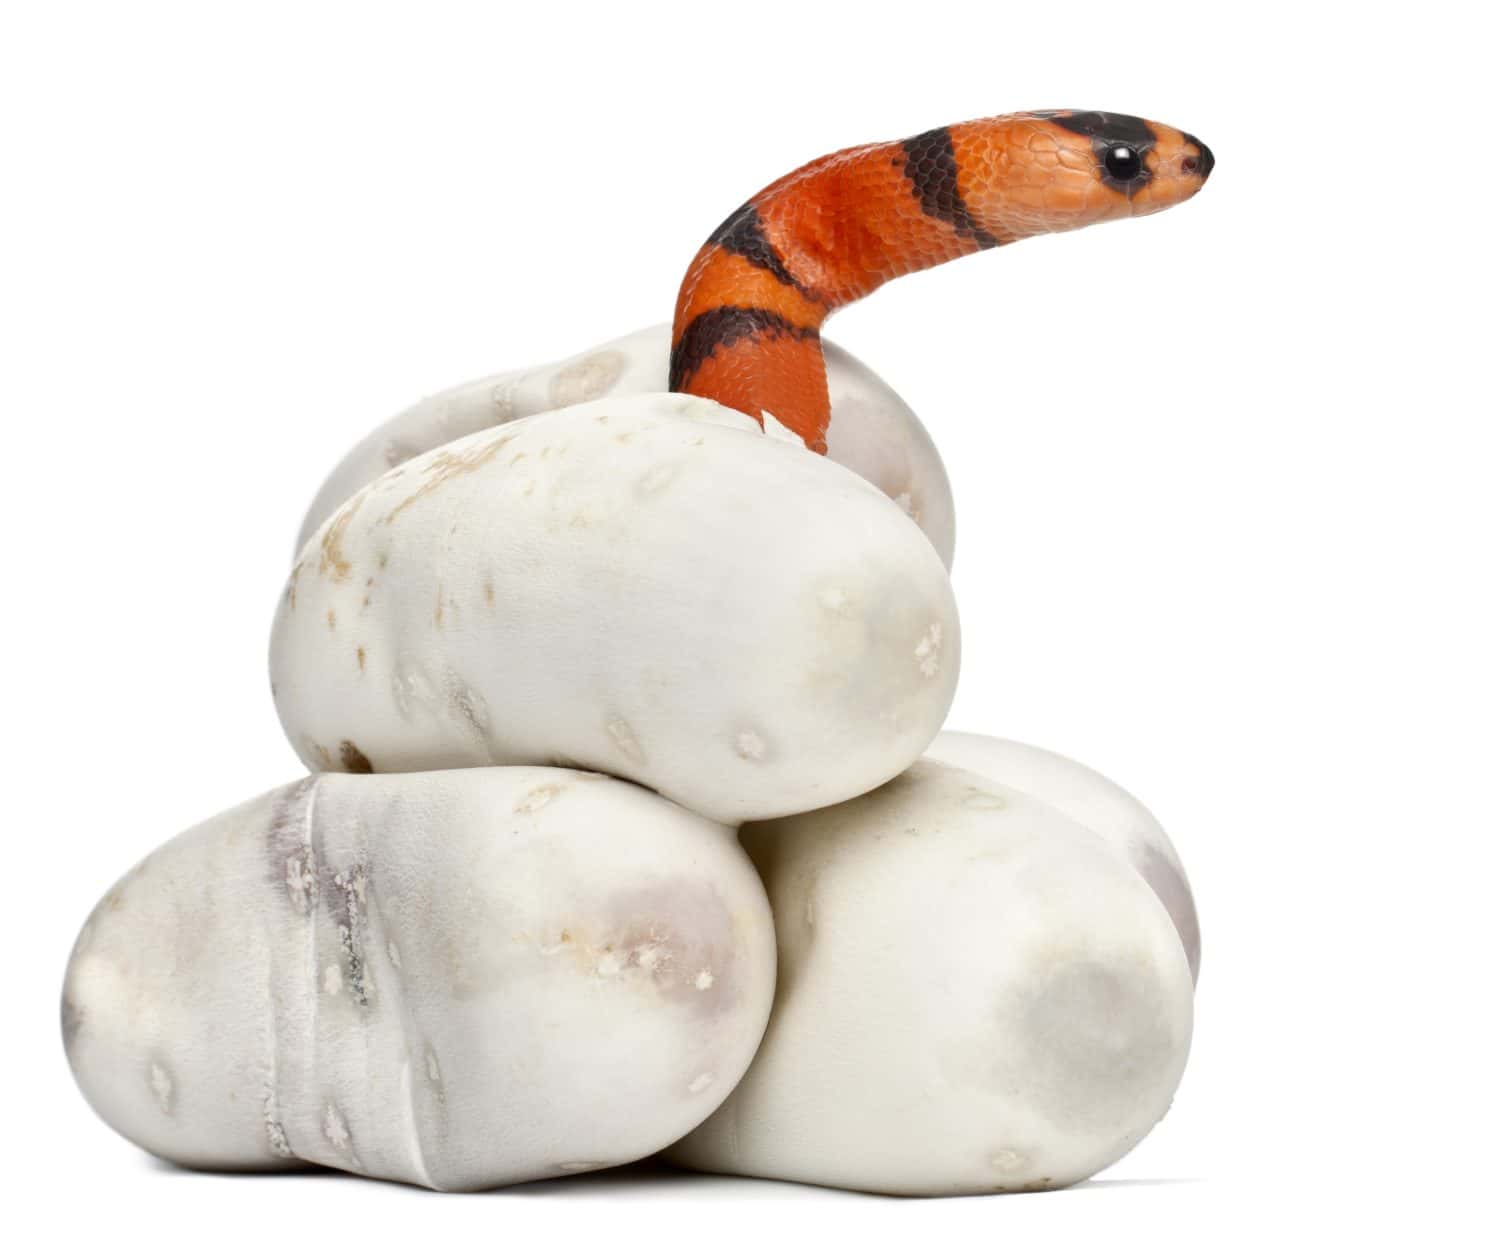 Hypomelanistic milk snake or milksnake, lampropeltis triangulum hondurensis, 1 minute old, in front of white background